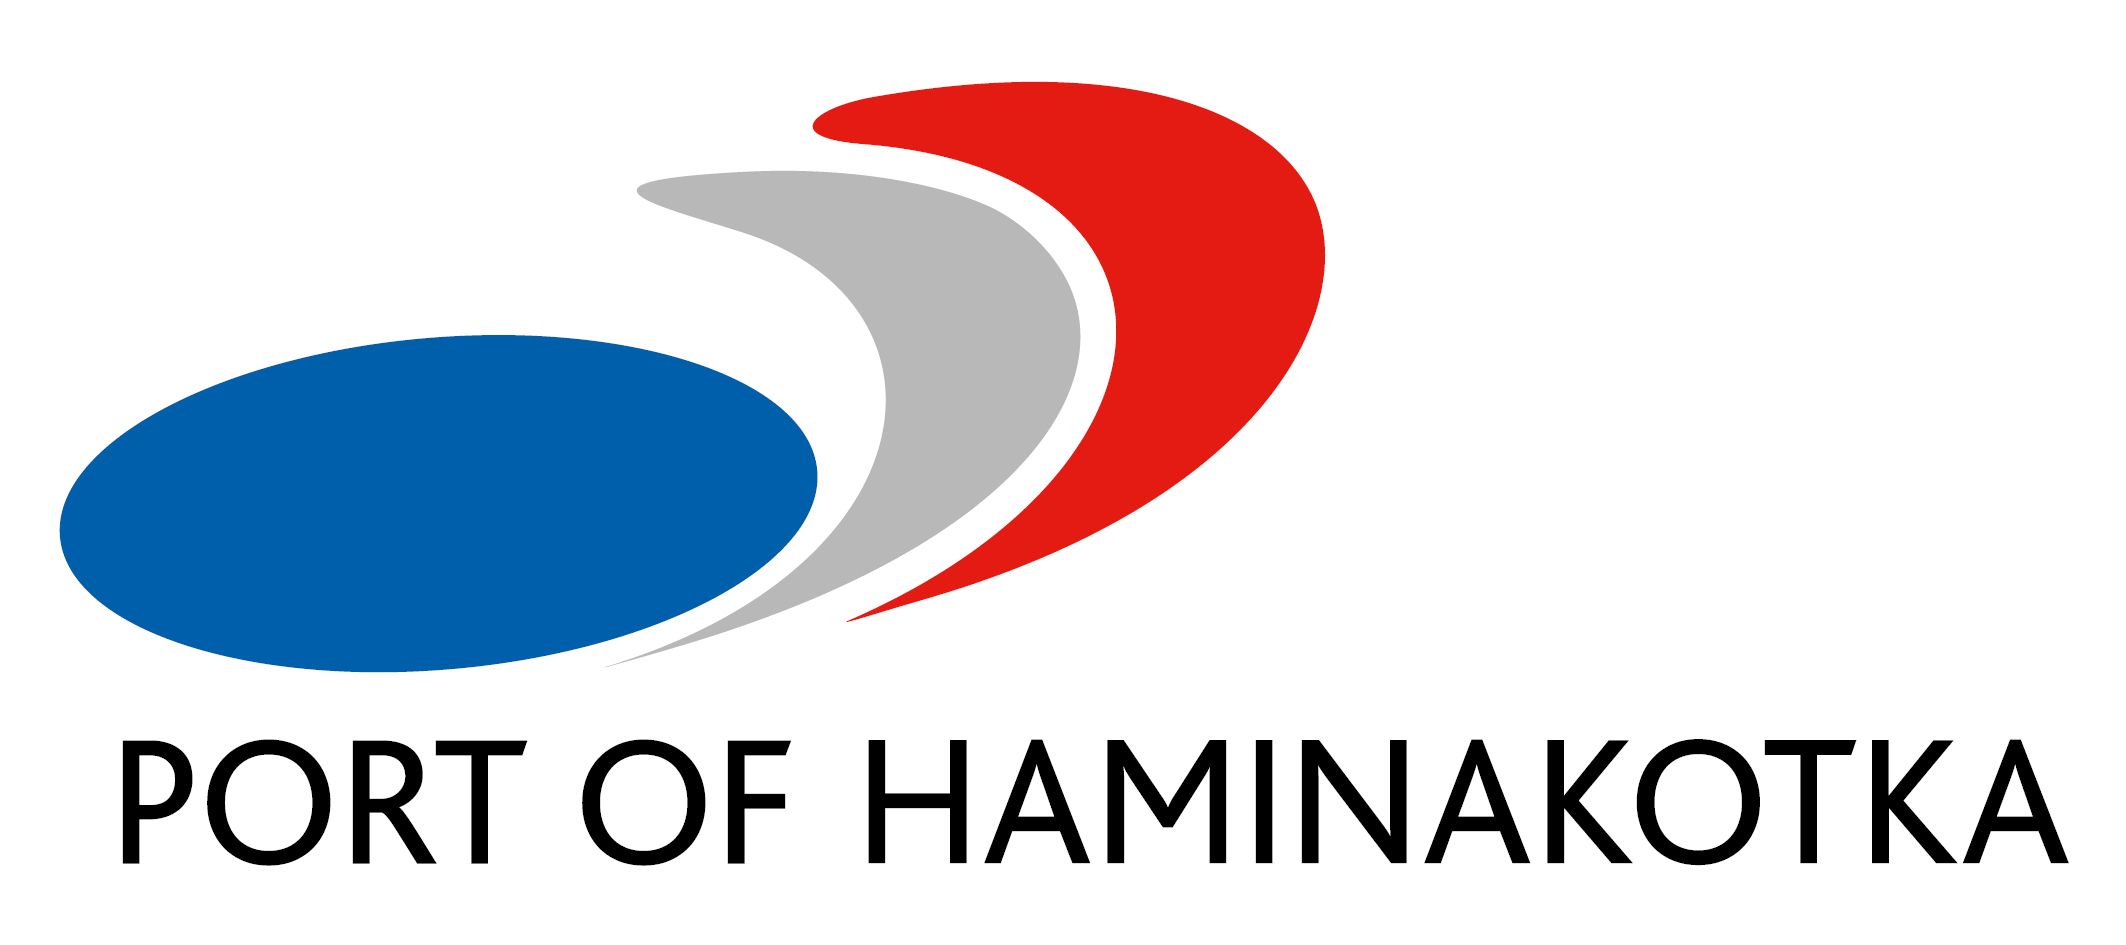 Port of HaminaKotka